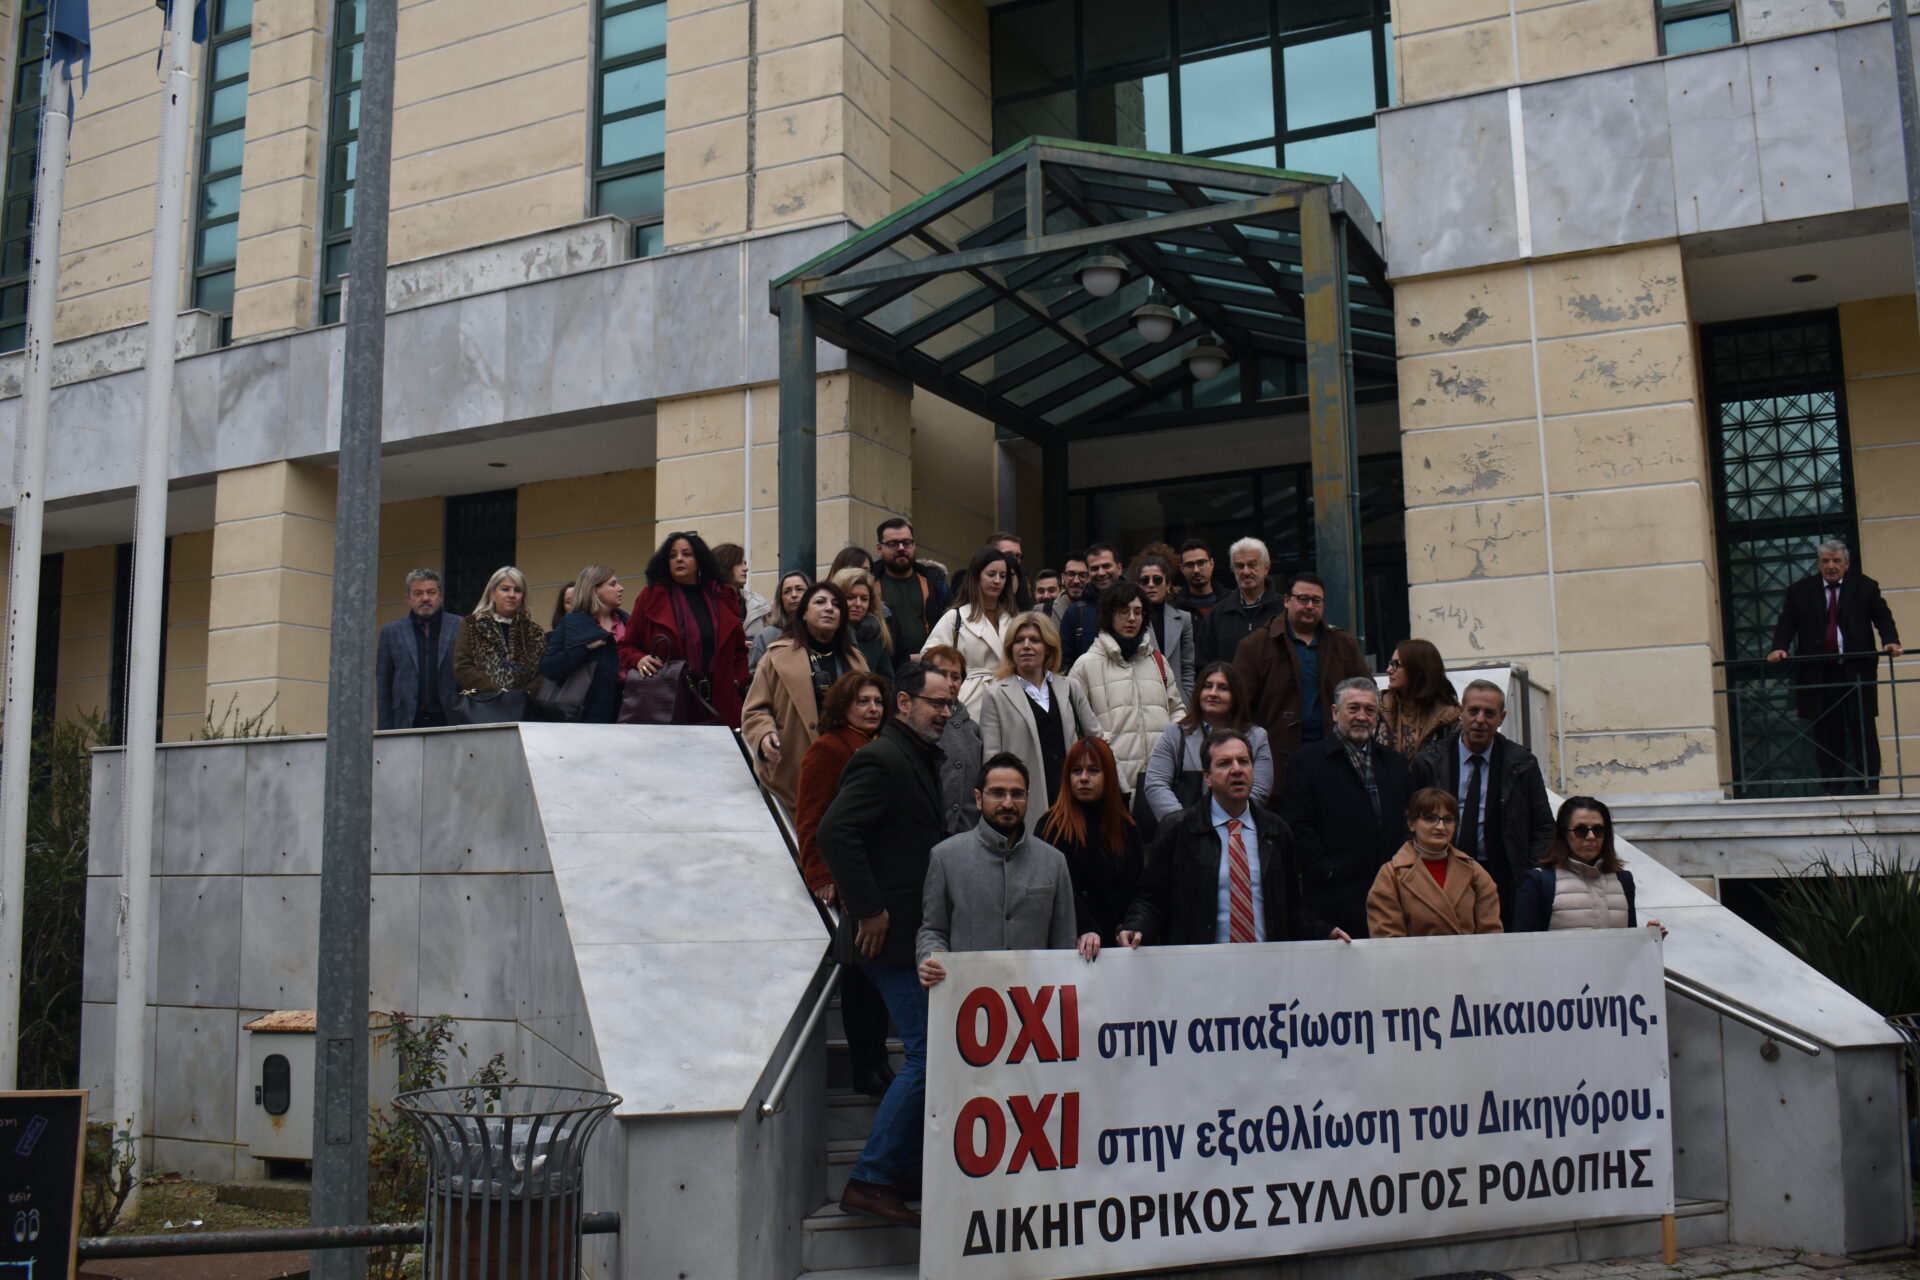 Δικηγορικός Σύλλογος Ροδόπης: Συγκέντρωση διαμαρτυρίας στο Δικαστικό Μέγαρο Κομοτηνής  για το νέο φορολογικό νομοσχέδιο